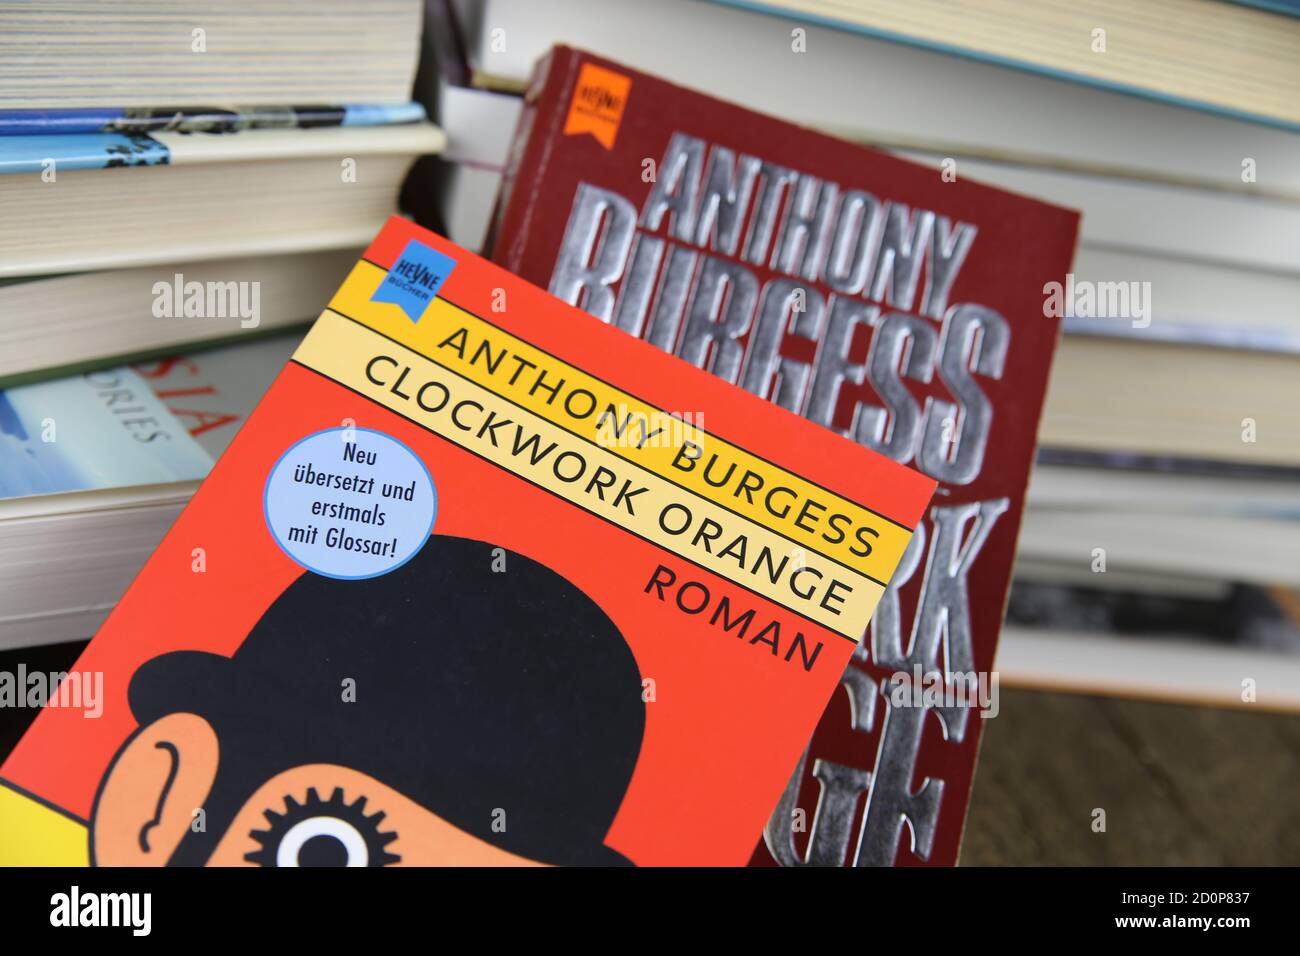 Viersen, Allemagne - mai 9. 2020: Vue sur les couvertures de livre isolées d'Anthony Burgess horloge orange avec pile de livres fond Banque D'Images